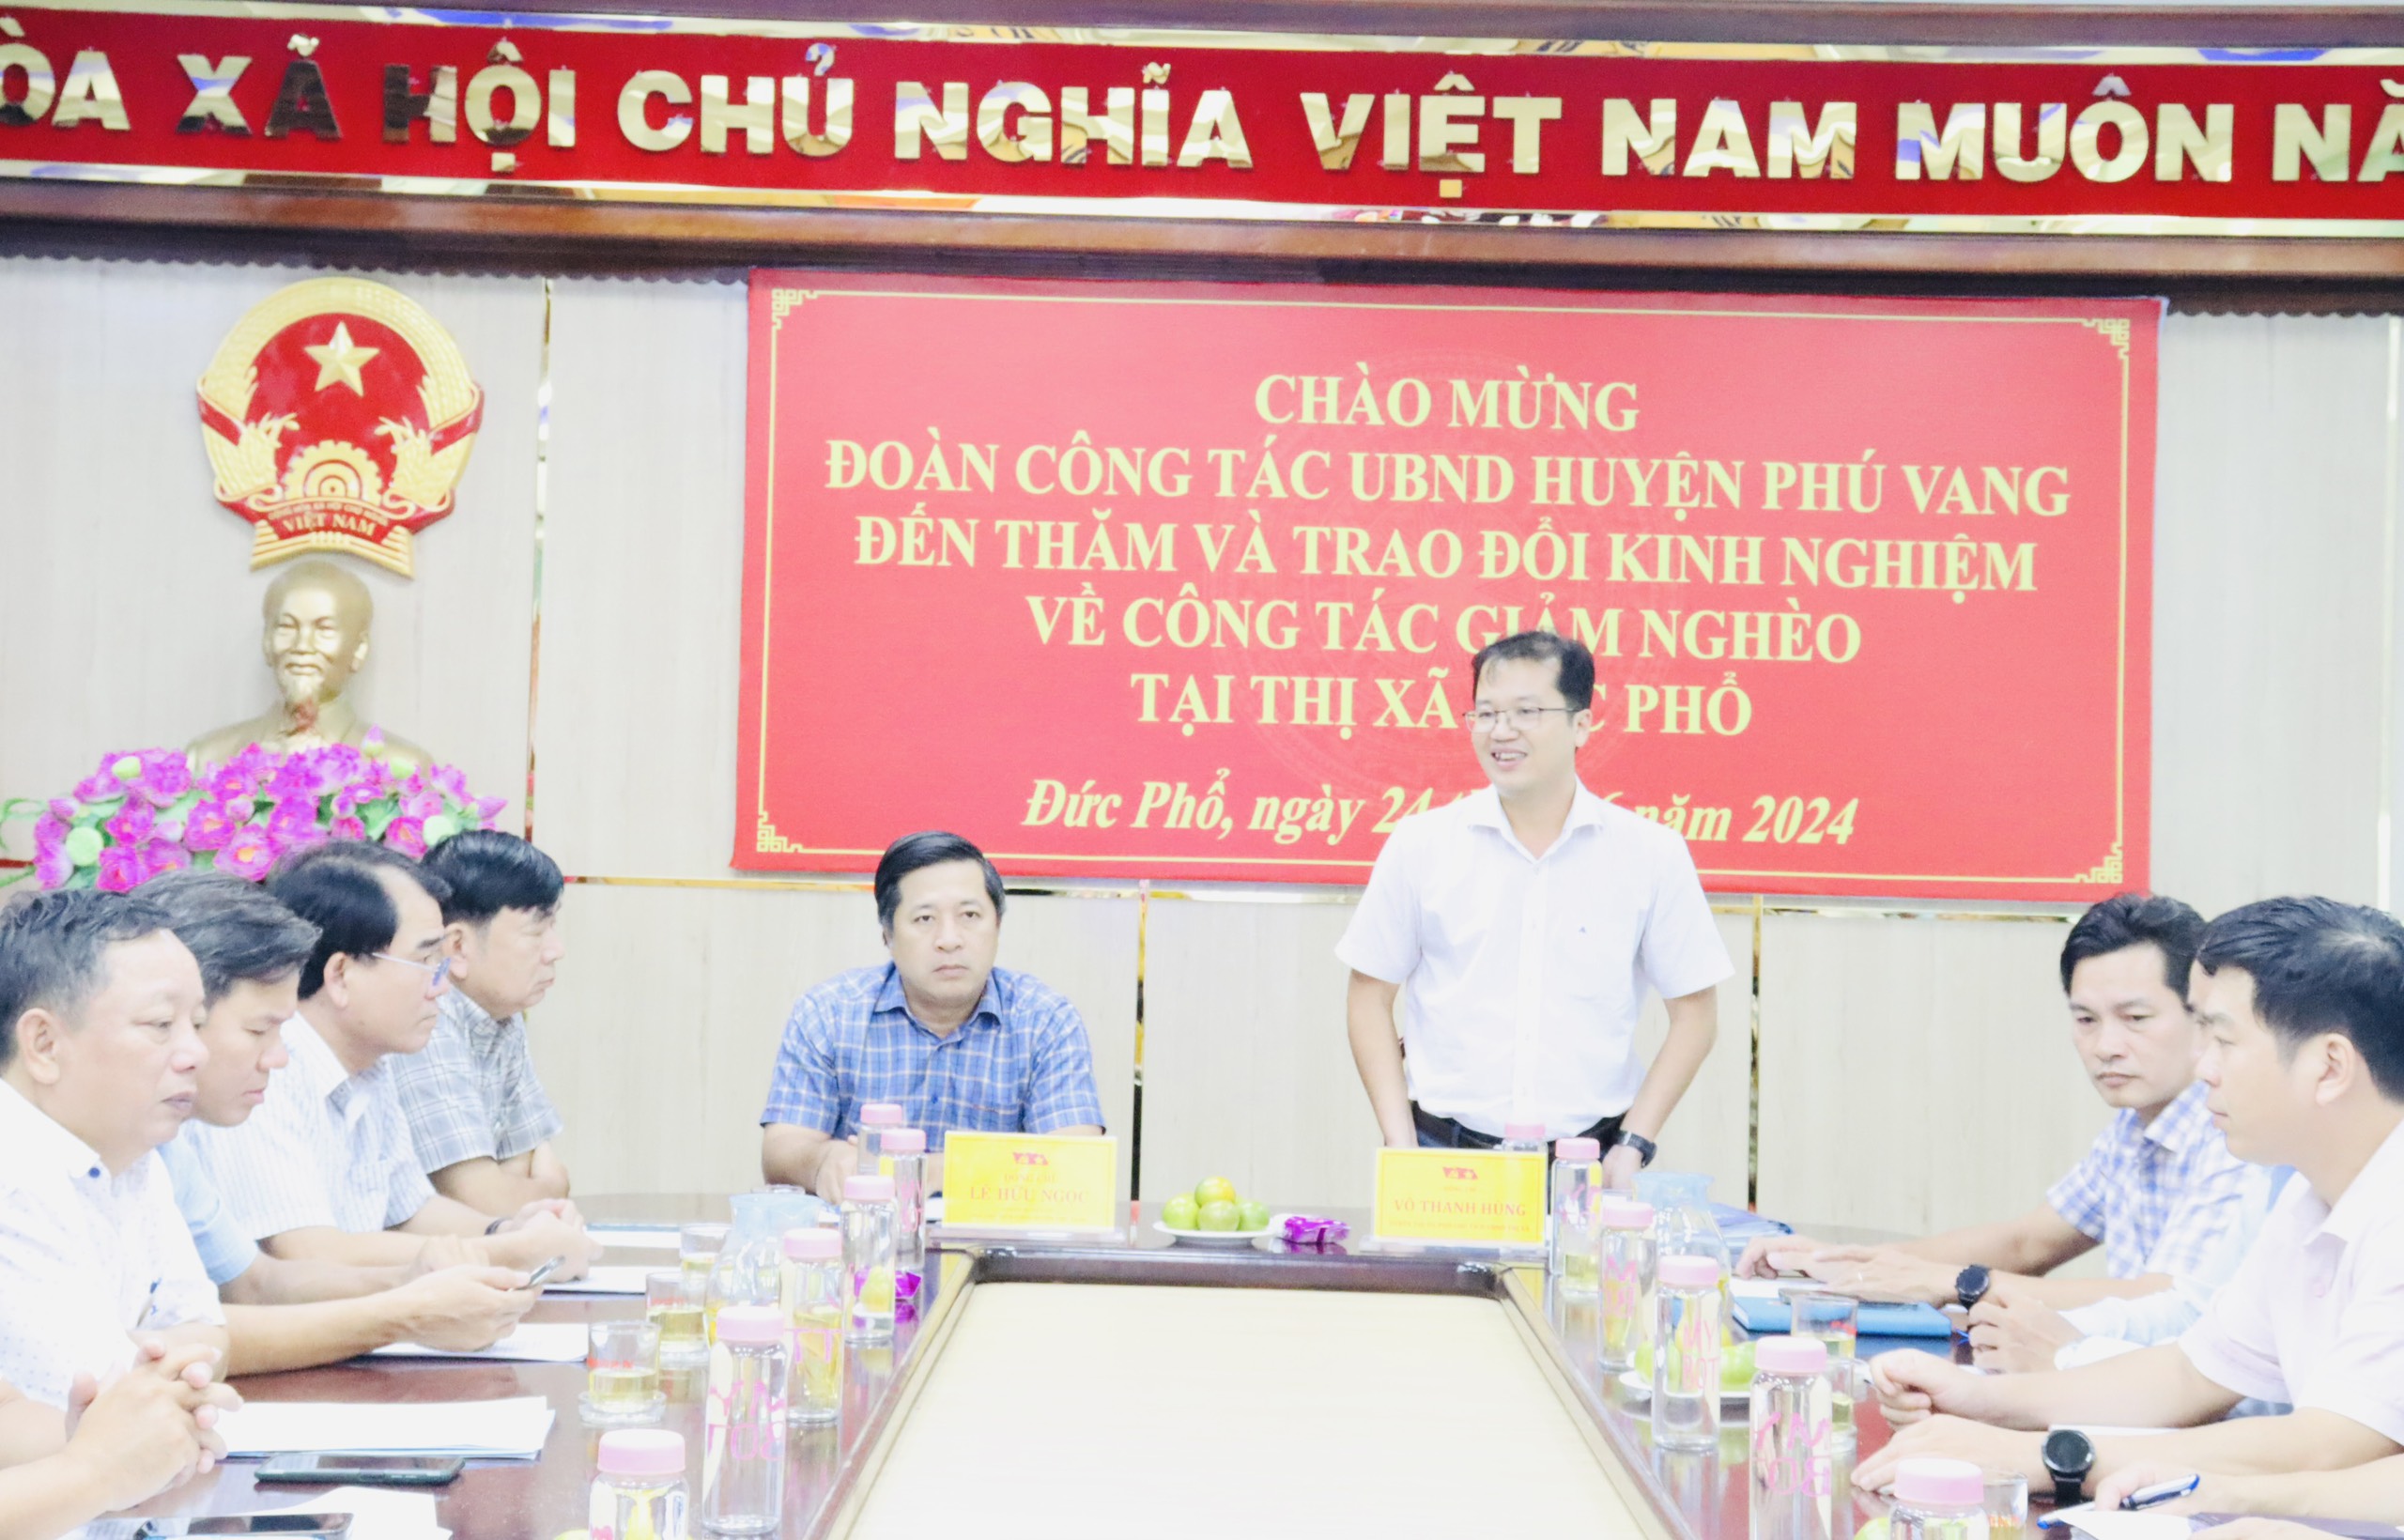 Đoàn công tác huyện Phú Vang, tỉnh Thừa Thiên Huế đến học tập, trao đổi kinh nghiệm về giảm nghèo bền vững tại thị xã Đức Phổ